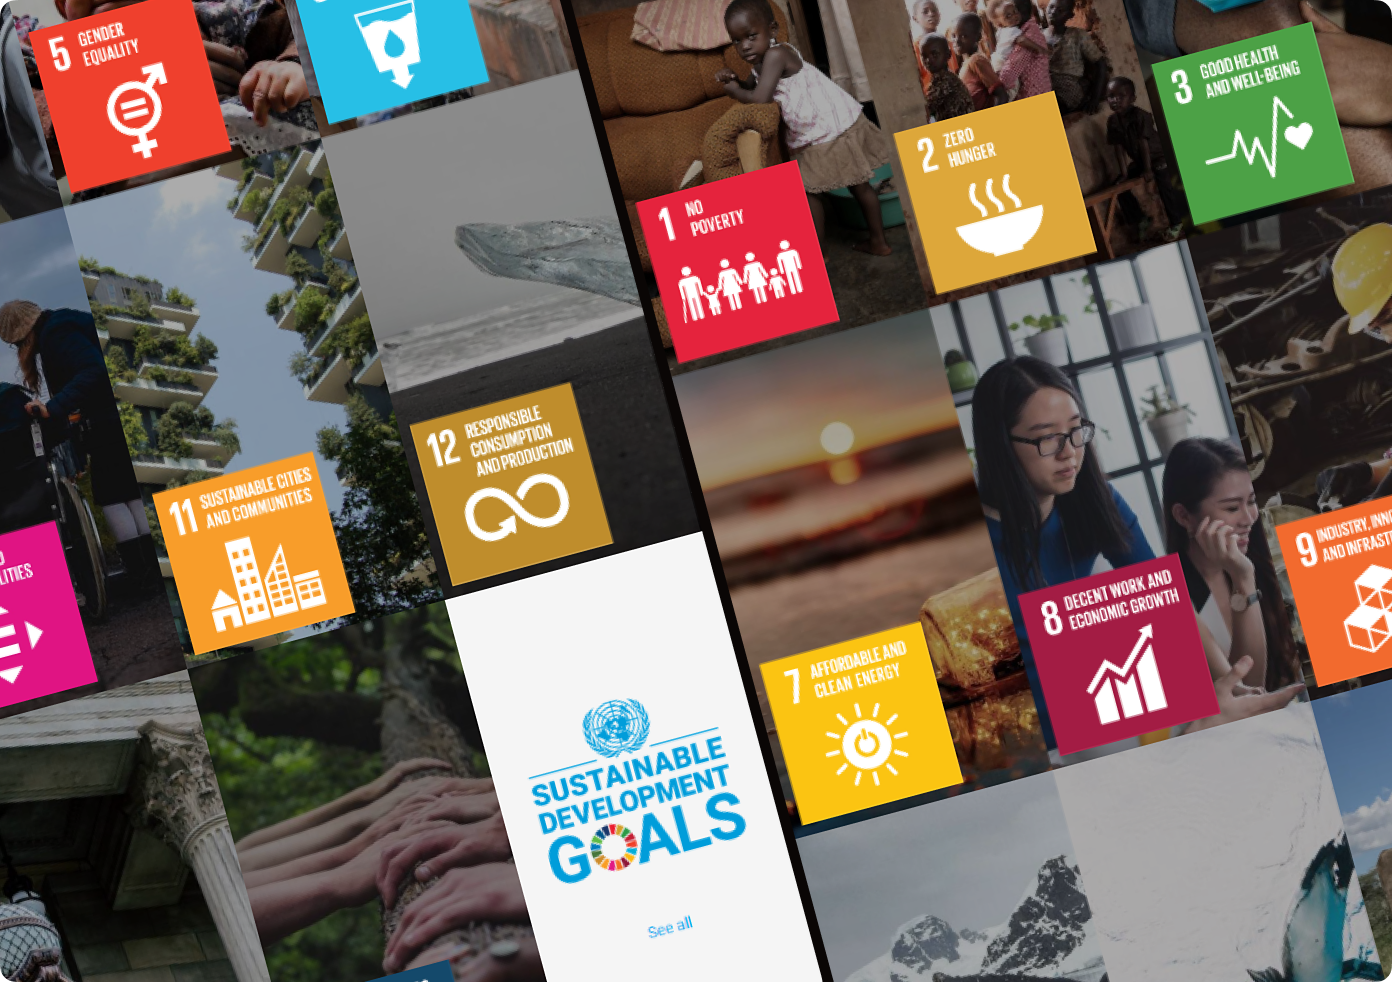 ООН рекомендует компаниям учитывать в своей стратегии 17 основных целей устойчивого развития. Среди них: ликвидация голода и нищеты, гендерное равенство, борьба с климатическими изменениями, качественное образование, ответственное потребление и производство и т. п.